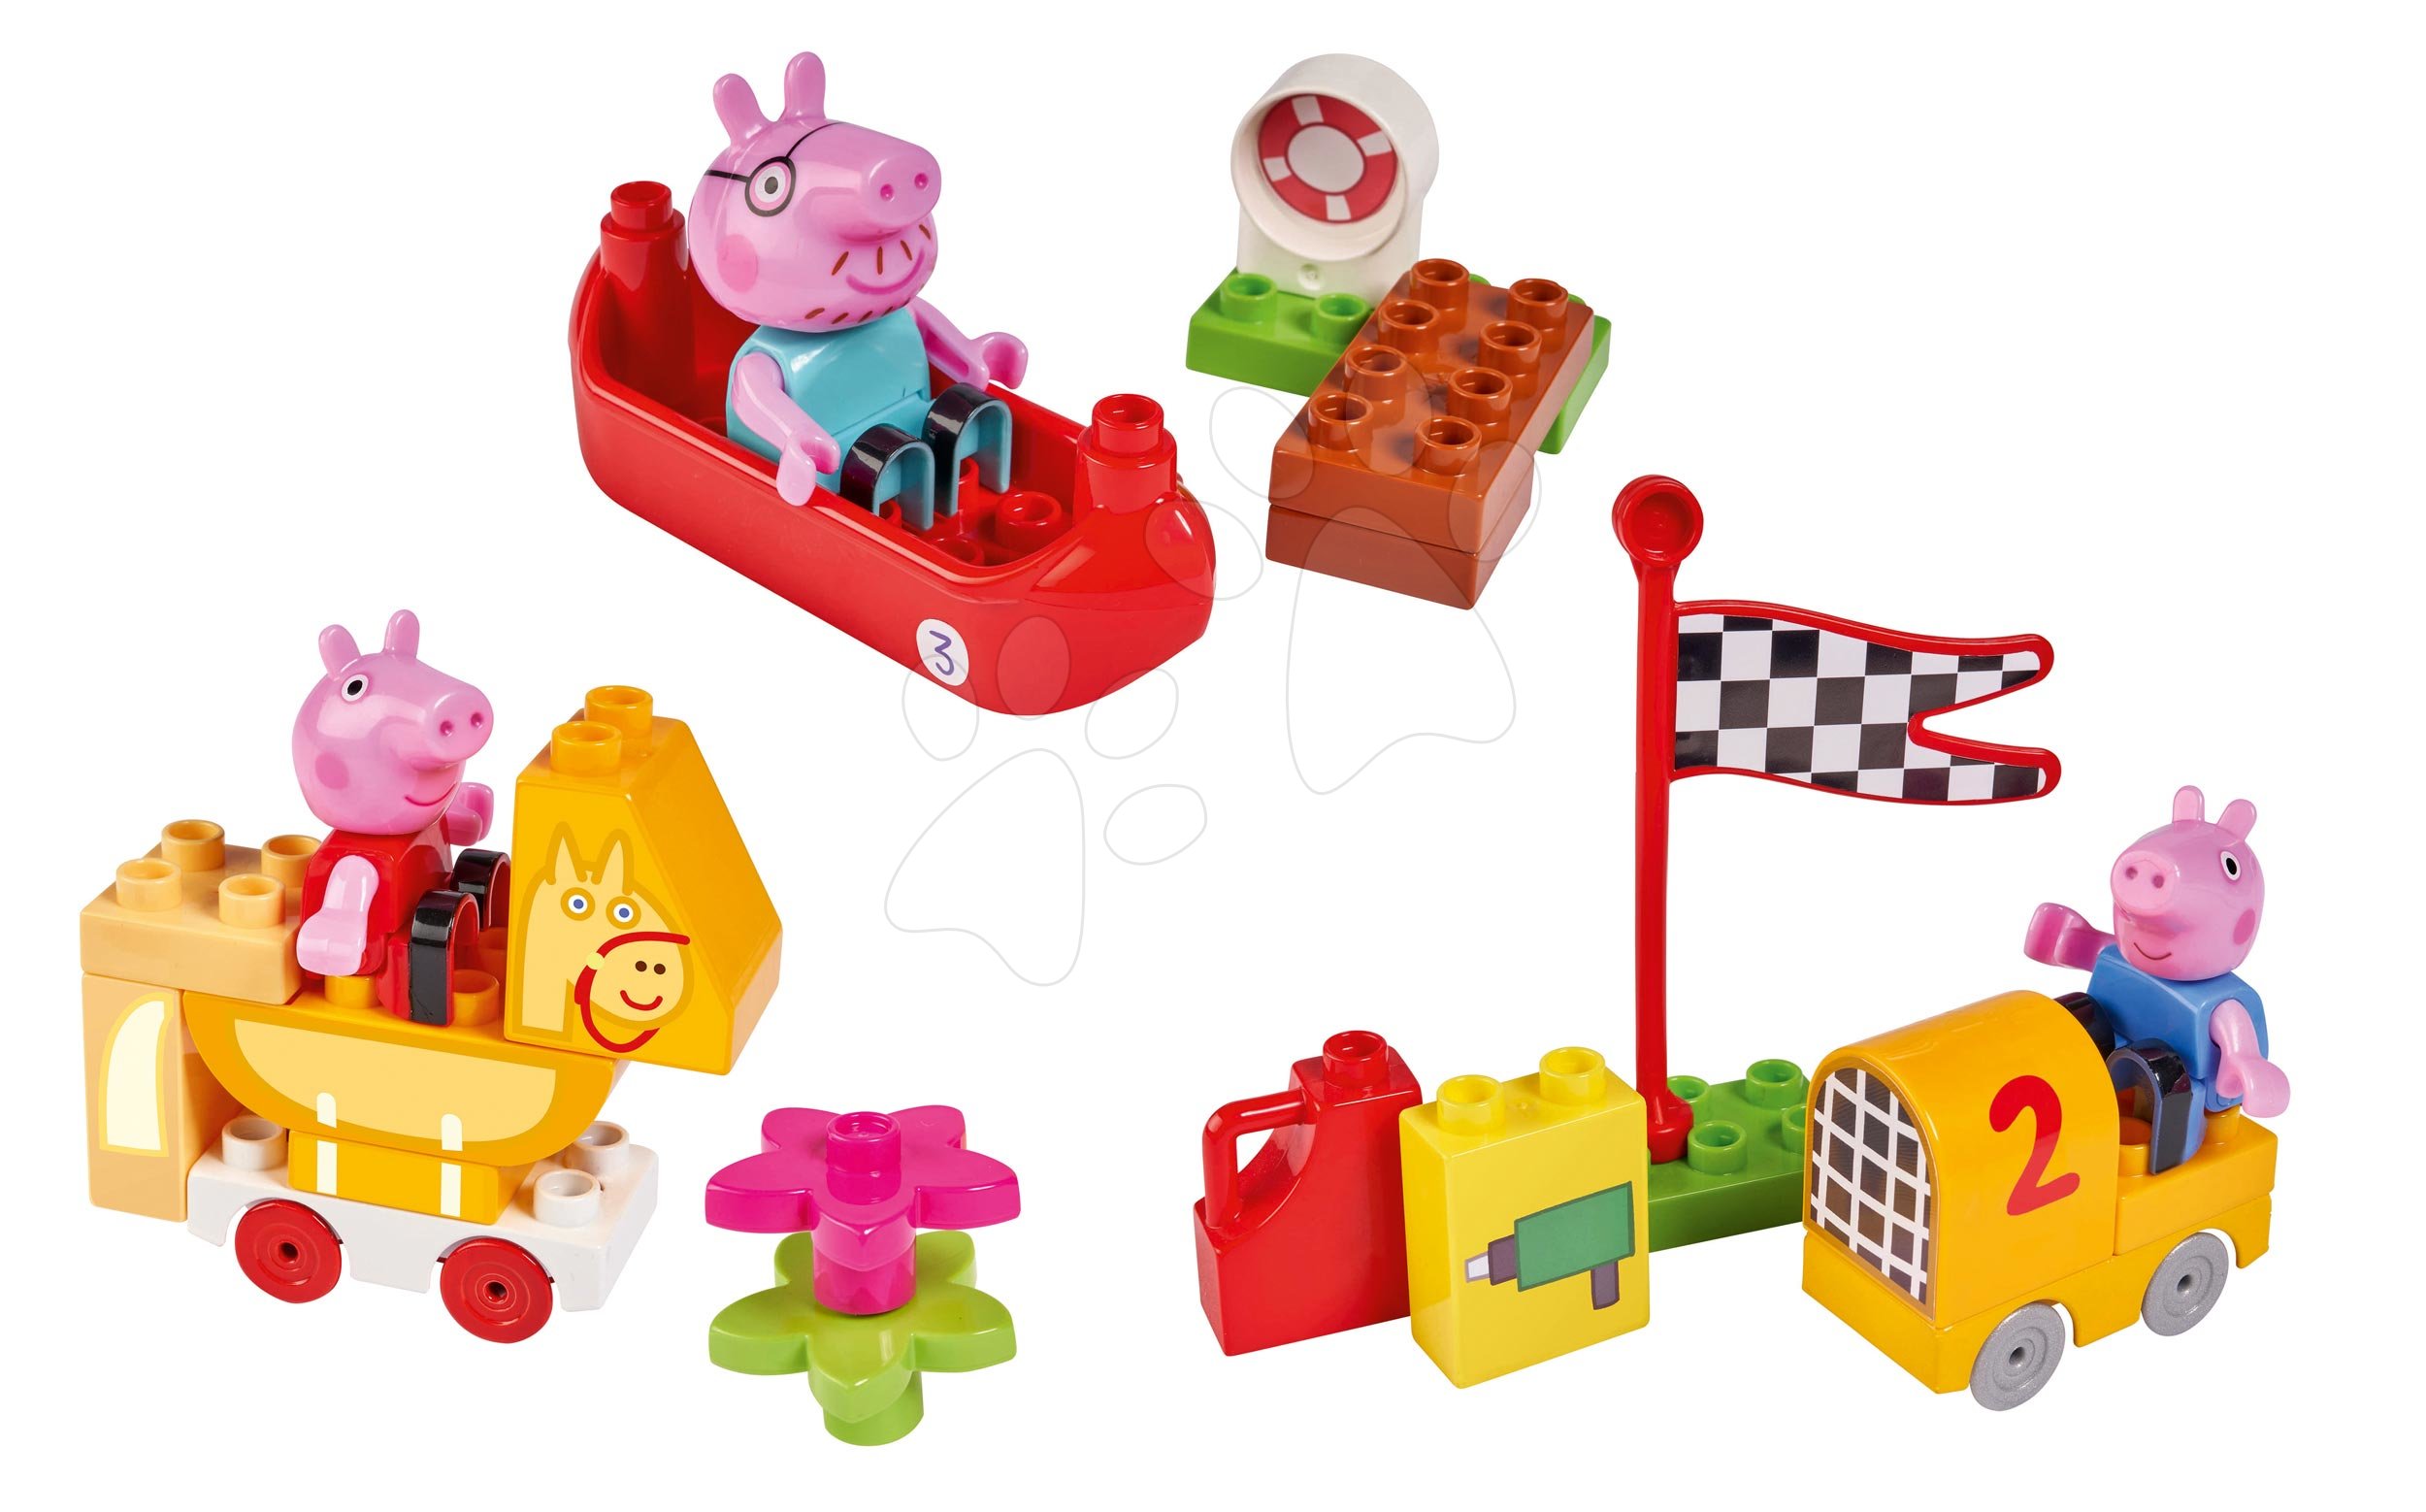 Kocke BIG-Bloxx kot lego - Kocke Peppa Pig Starter Sets PlayBIG BLOXX s figurico - set 3 vrst od 18 mes